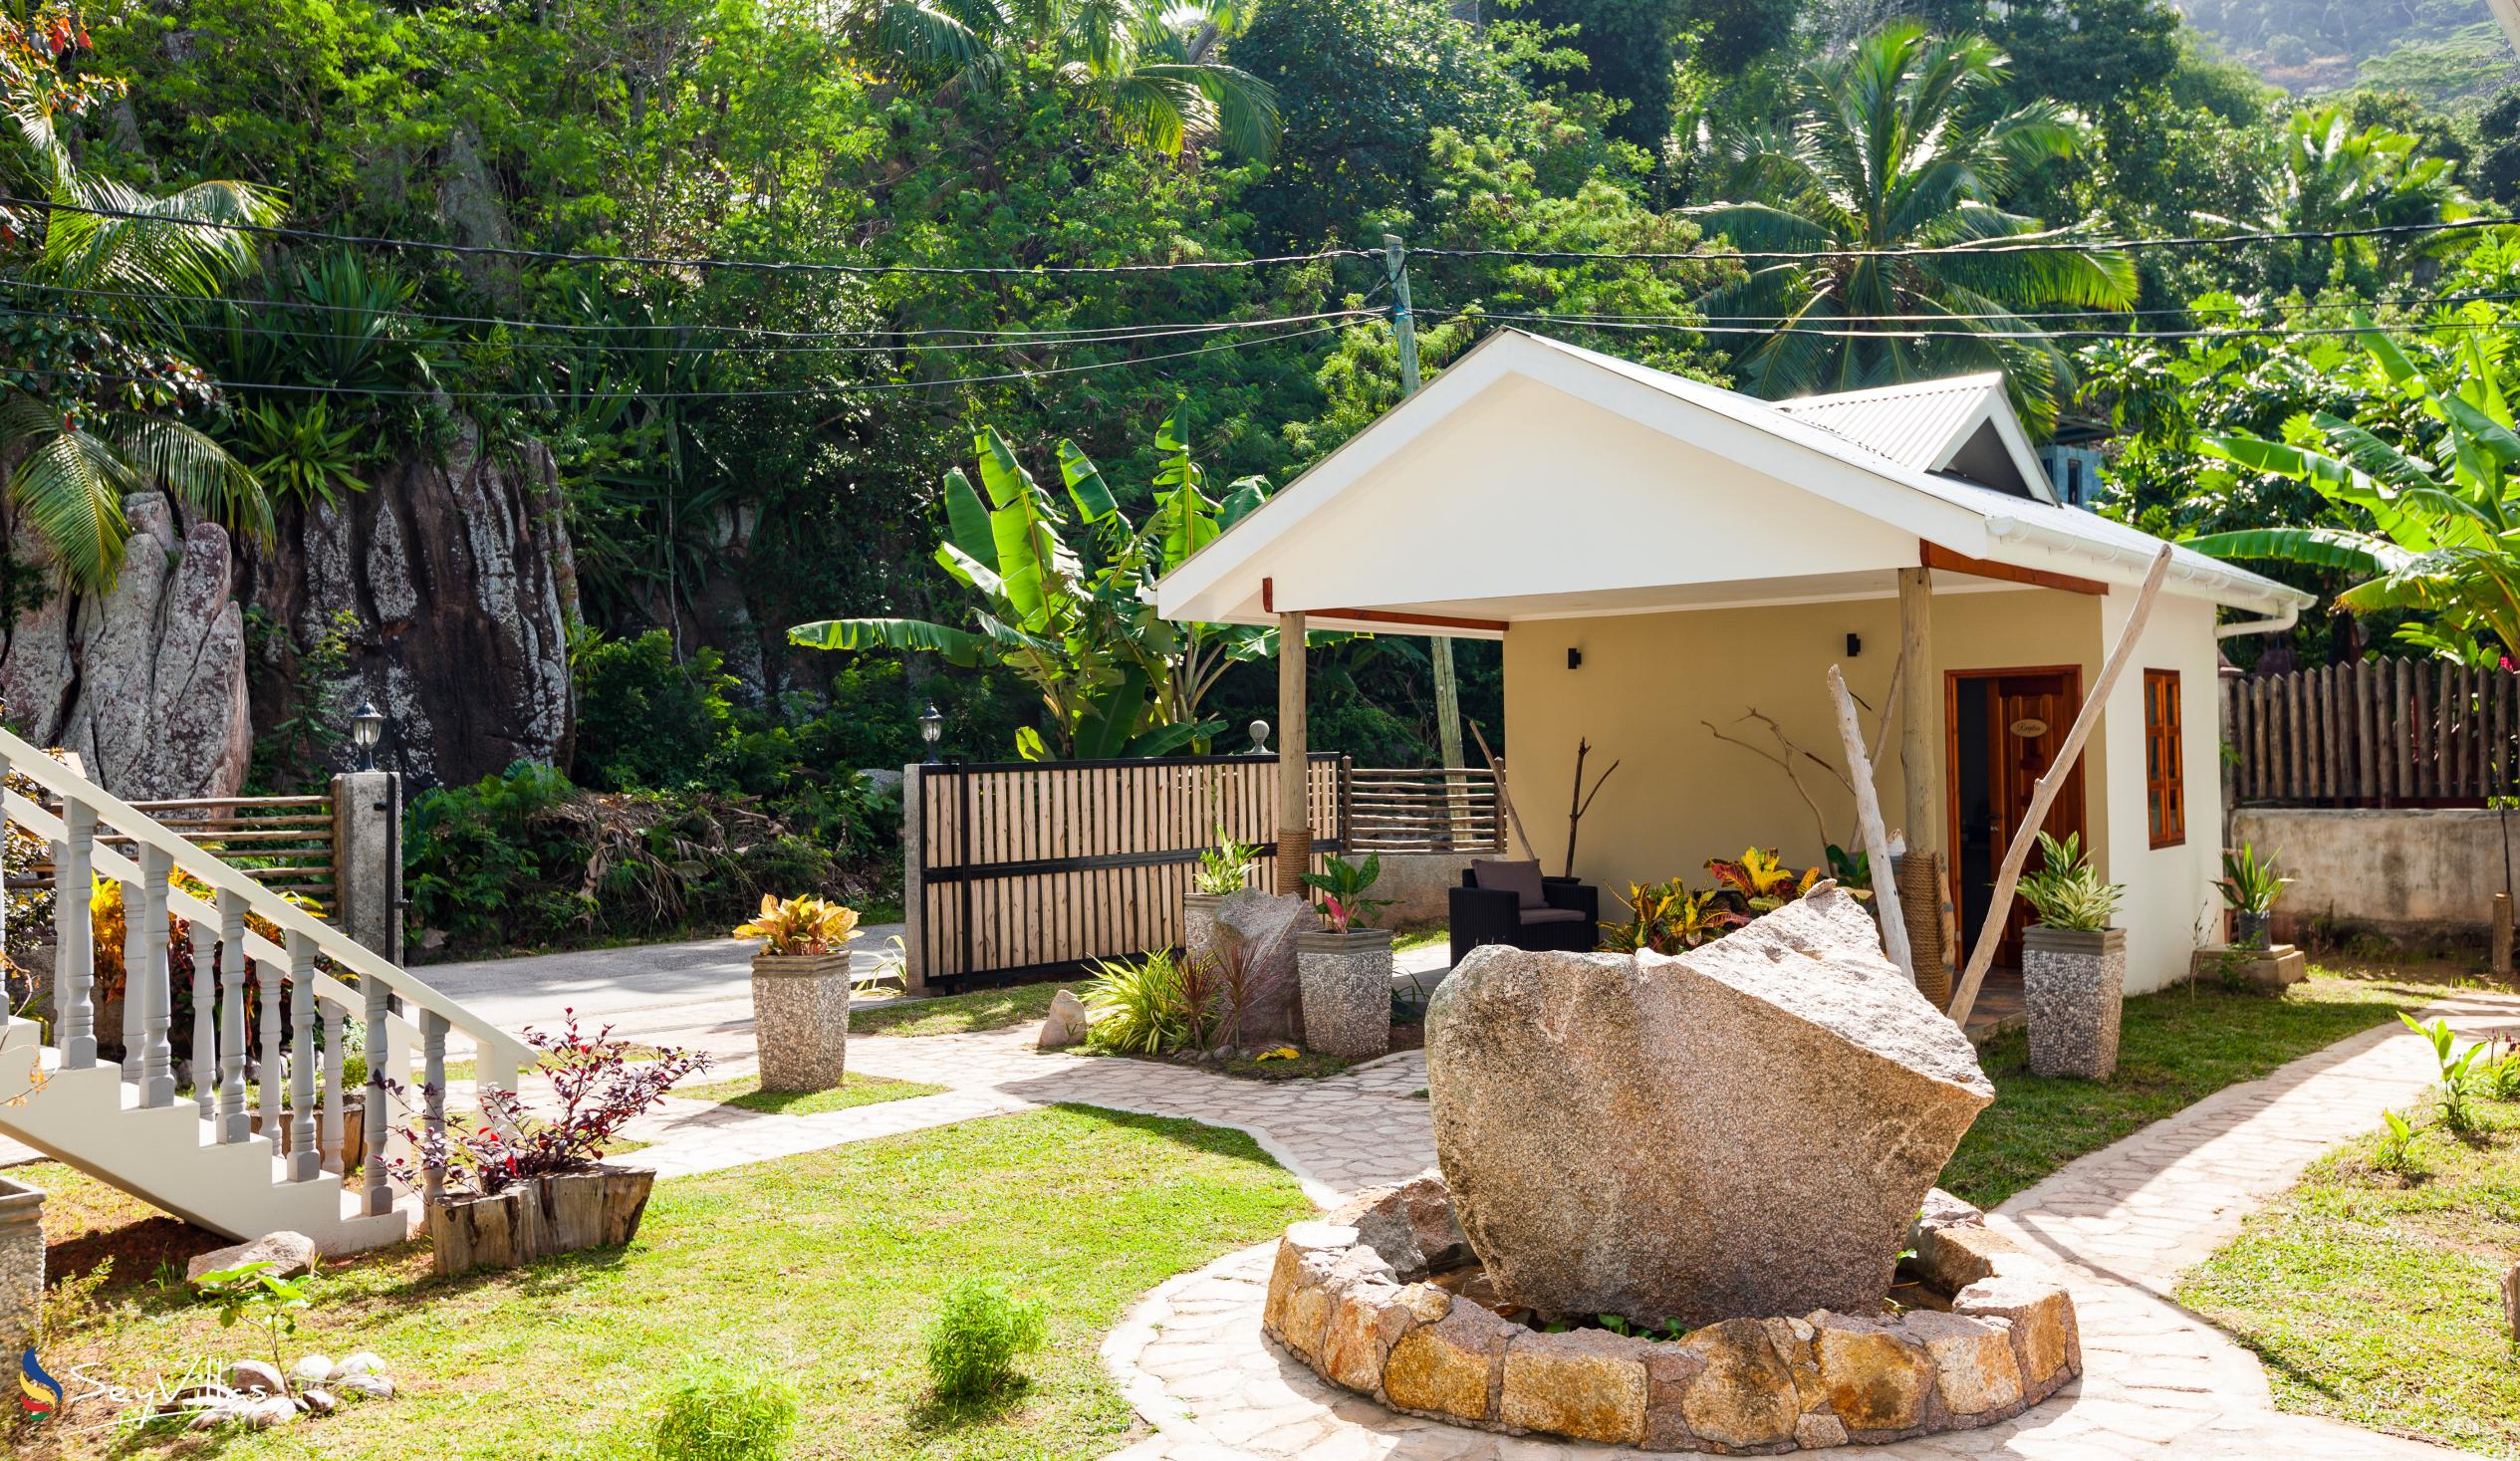 Foto 6: Maison Ed-Elle - Esterno - La Digue (Seychelles)